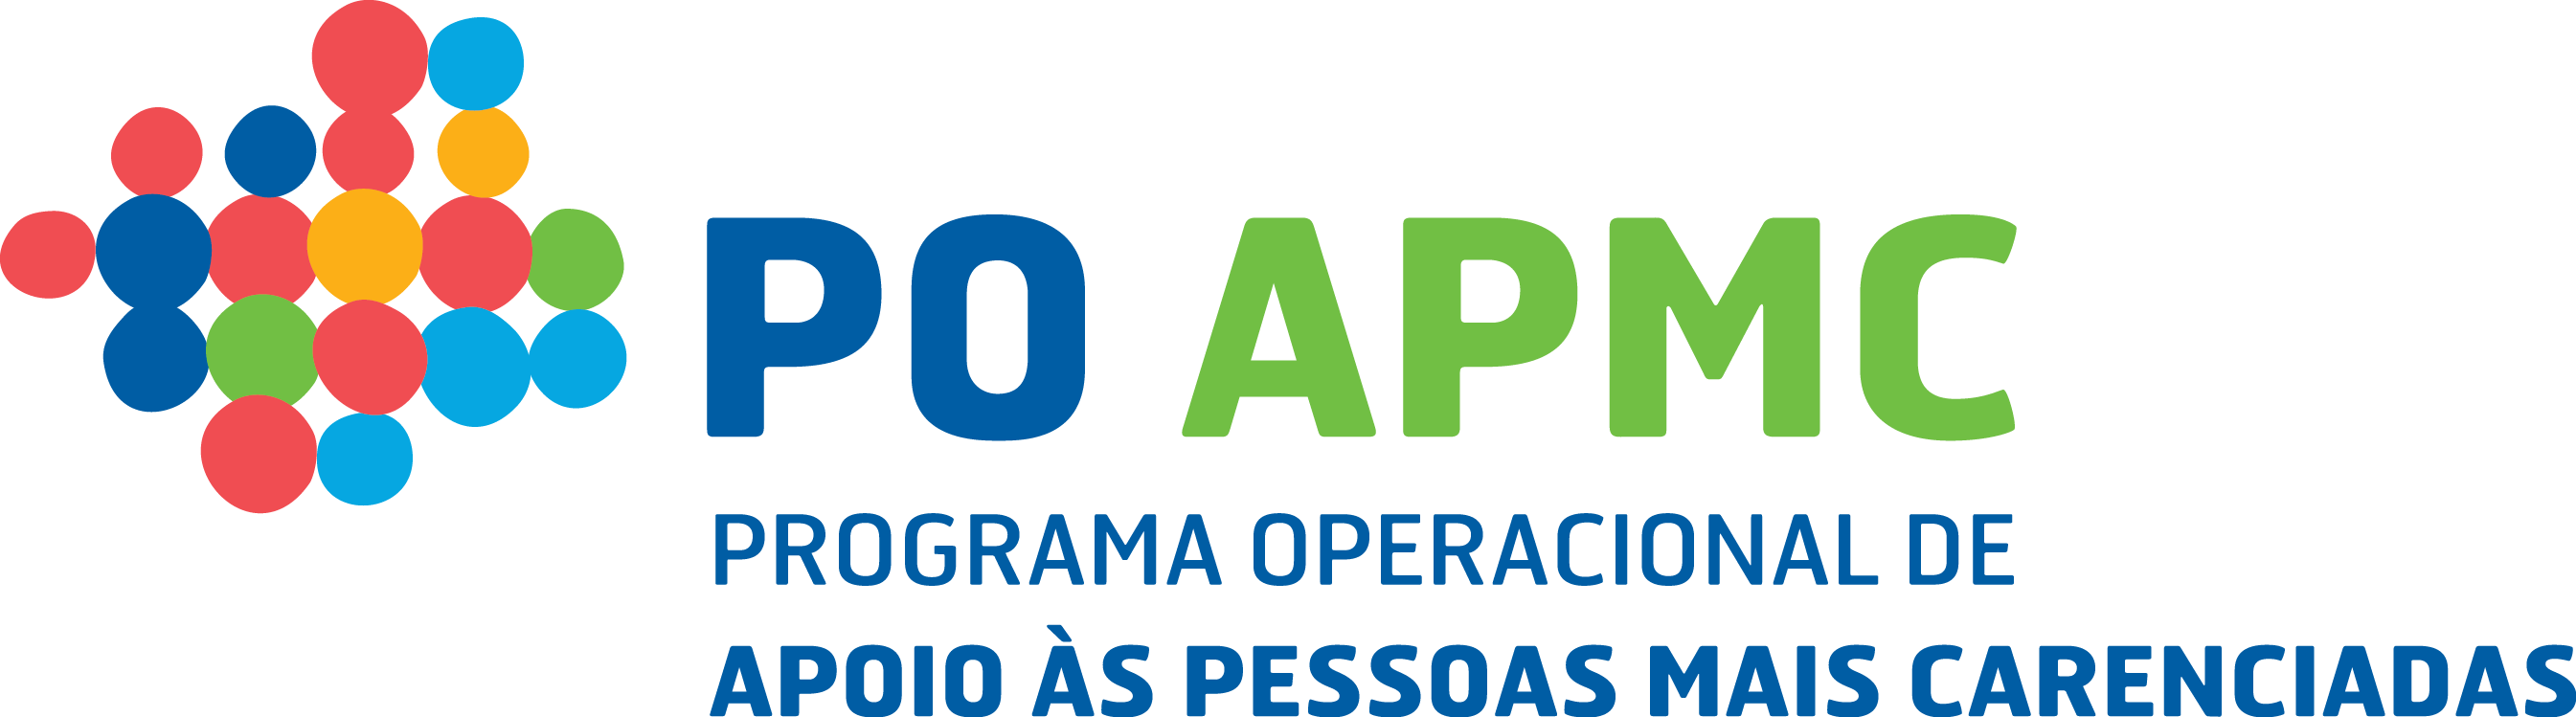 POAPMC - Programa Operacional de Apoio s Pessoas Mais Carenciadas